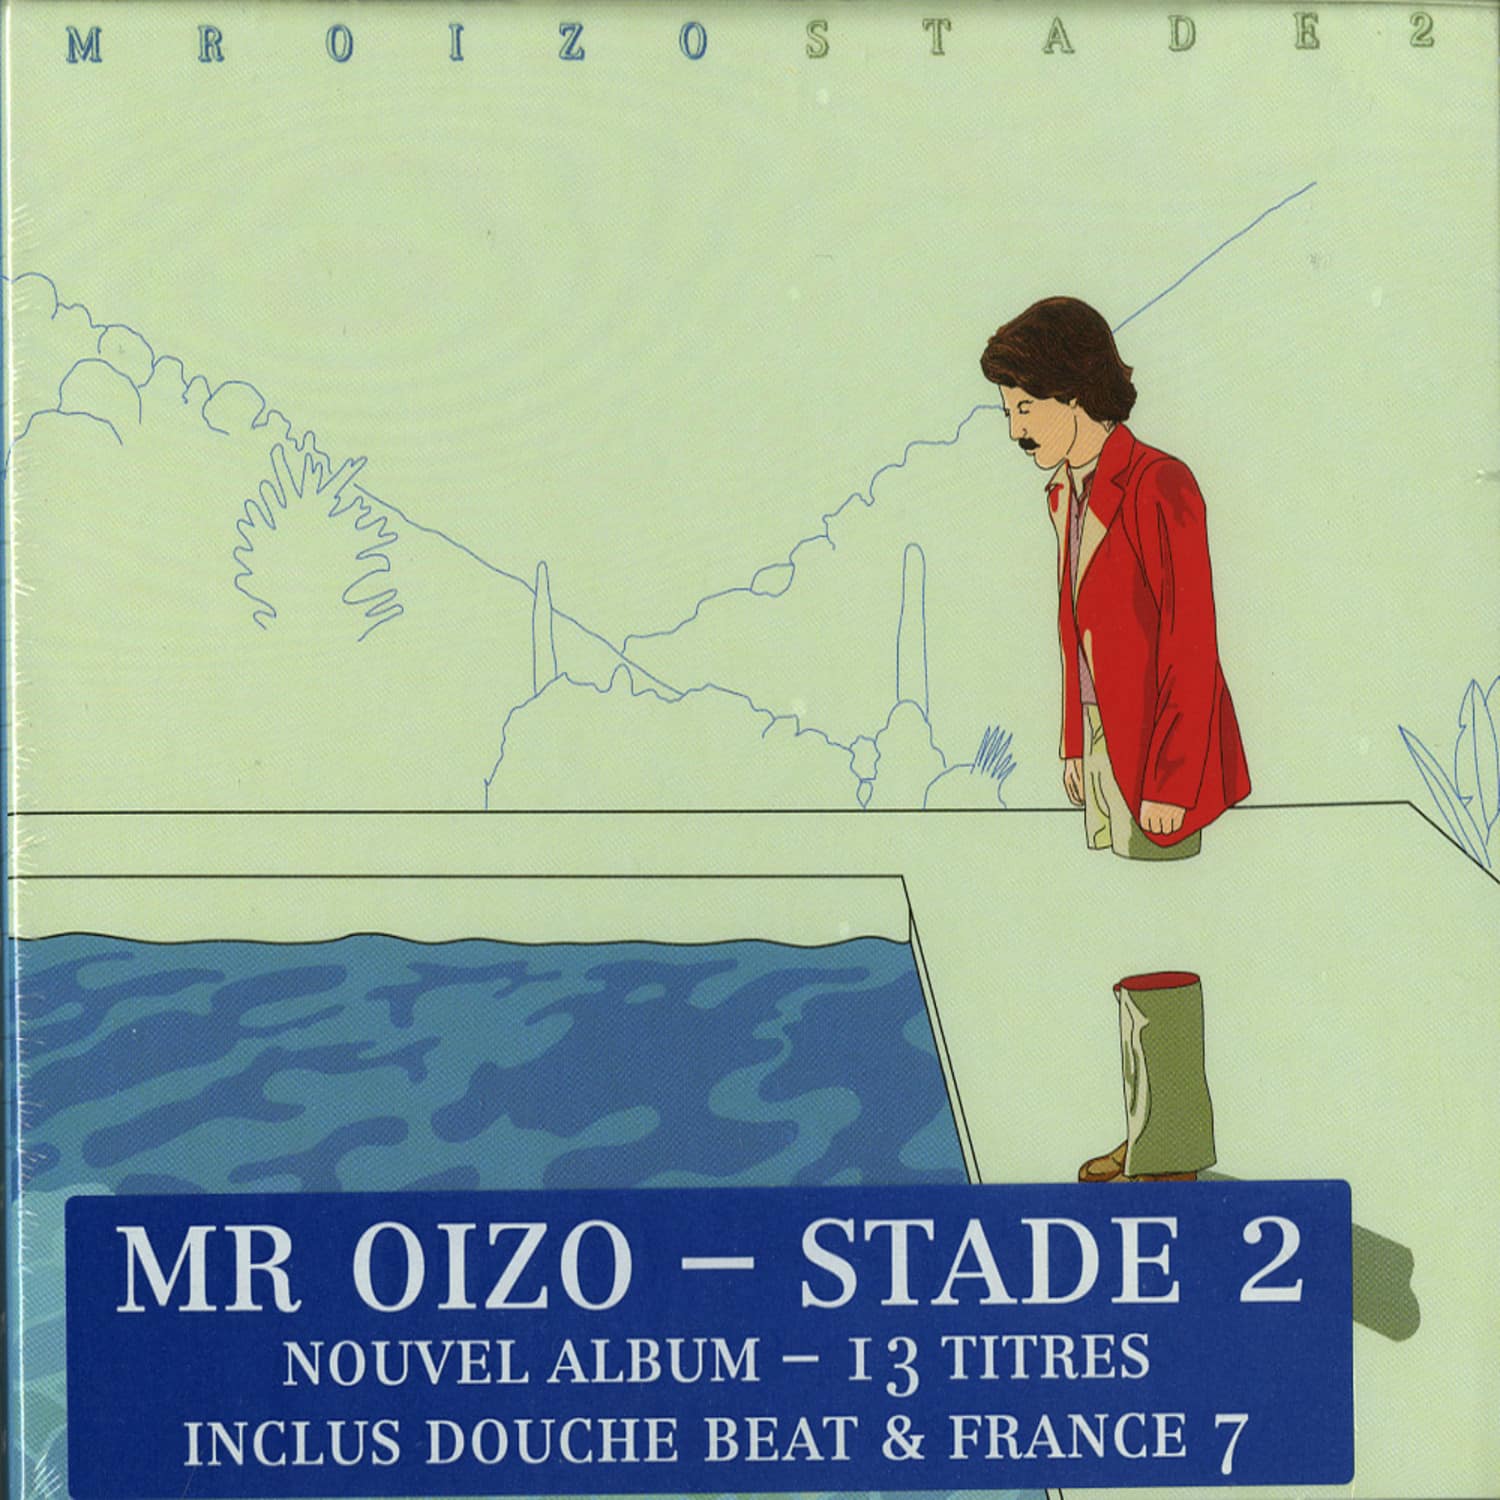 Mr. Oizo - STADE 2 